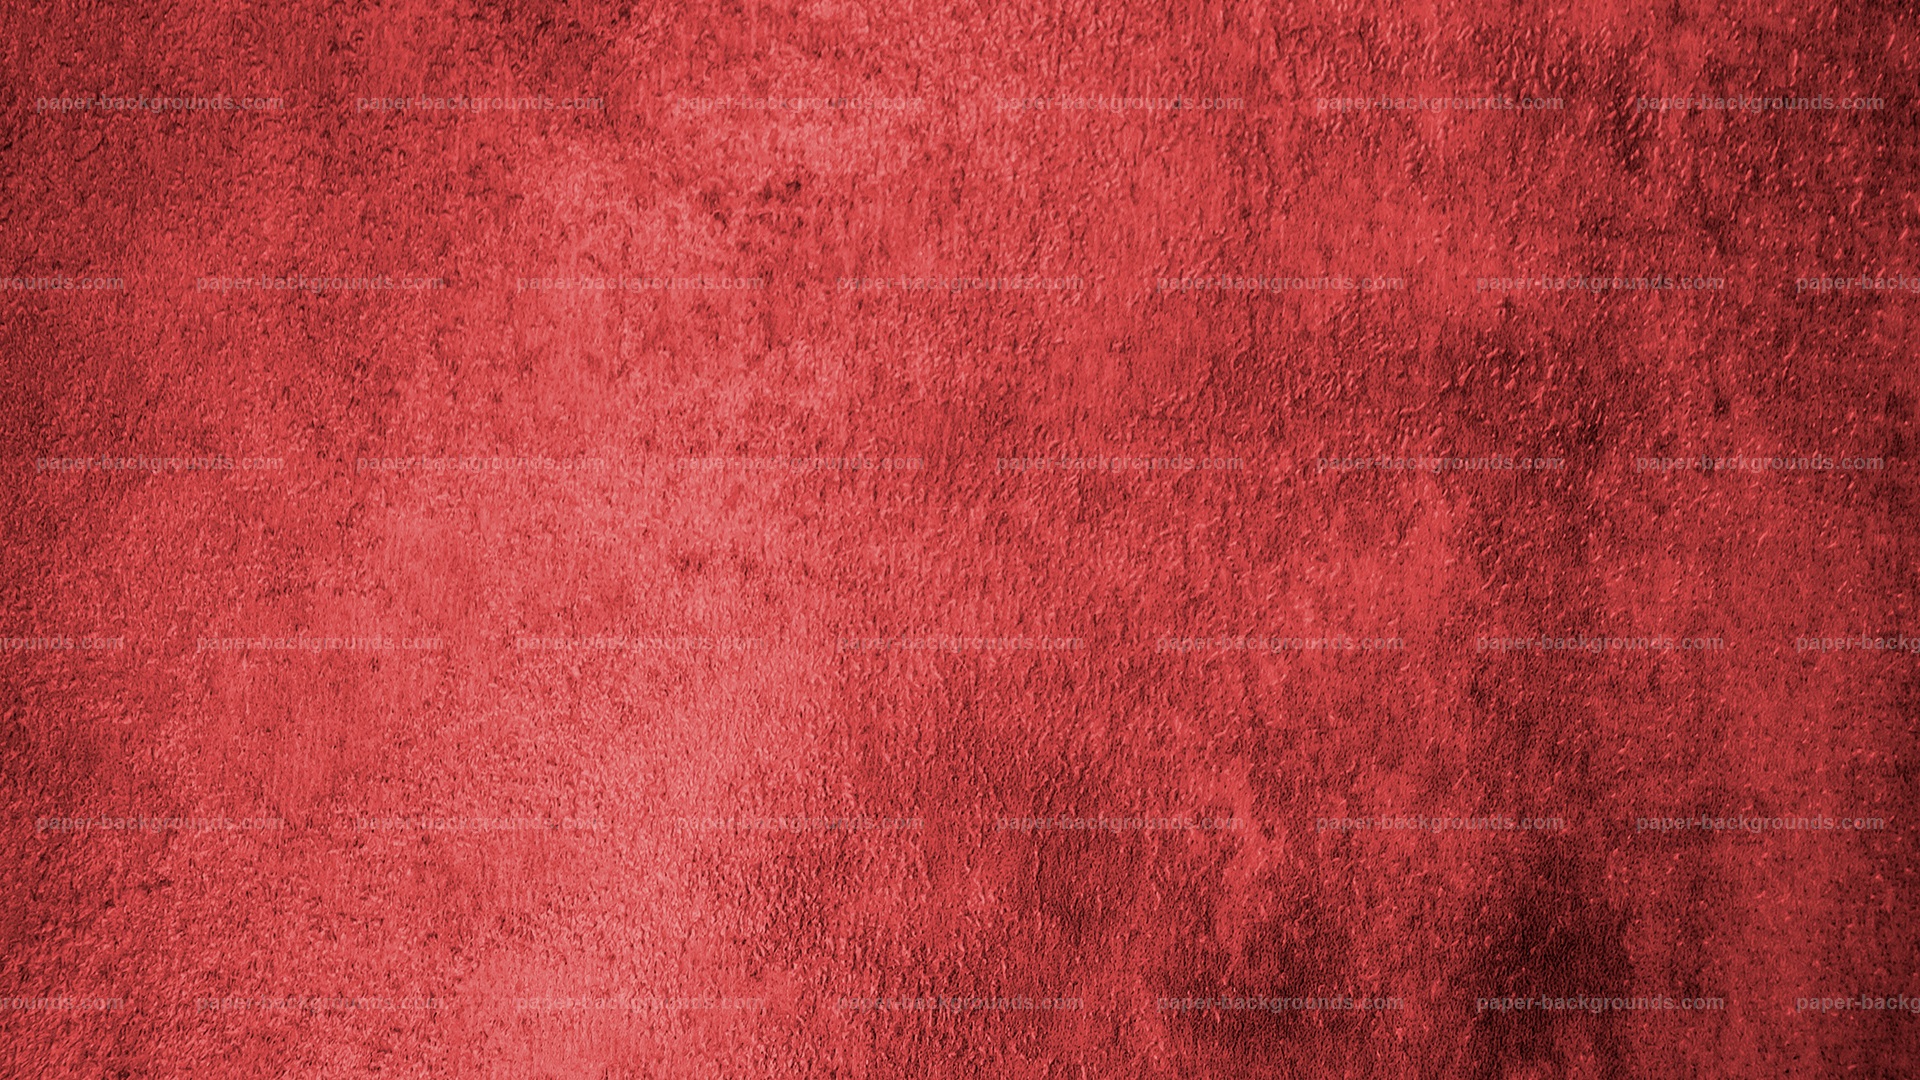 Red Grunge Background HD Texture